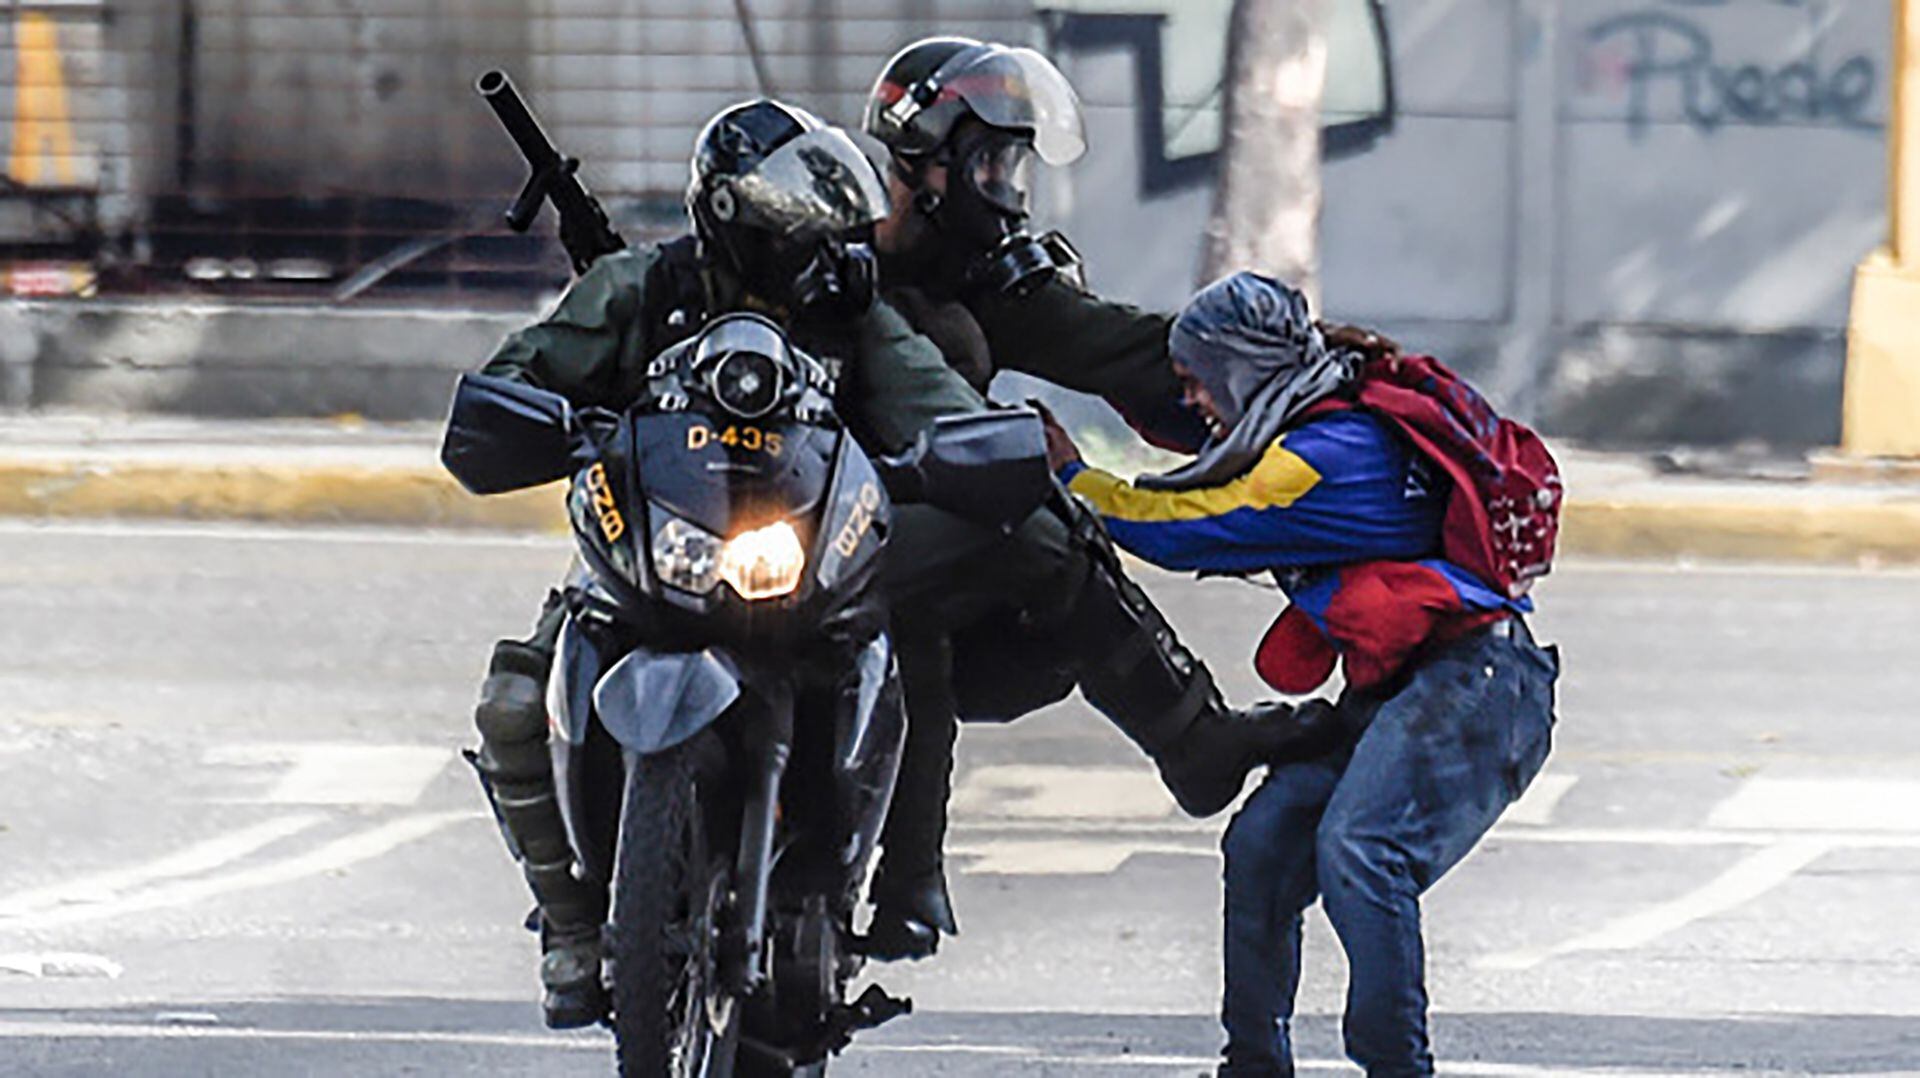 Los colectivos chavistas son fuerzas para policiales que manejan el crimen menor en los barrios a la vez que mantienen el control político en favor del régimen